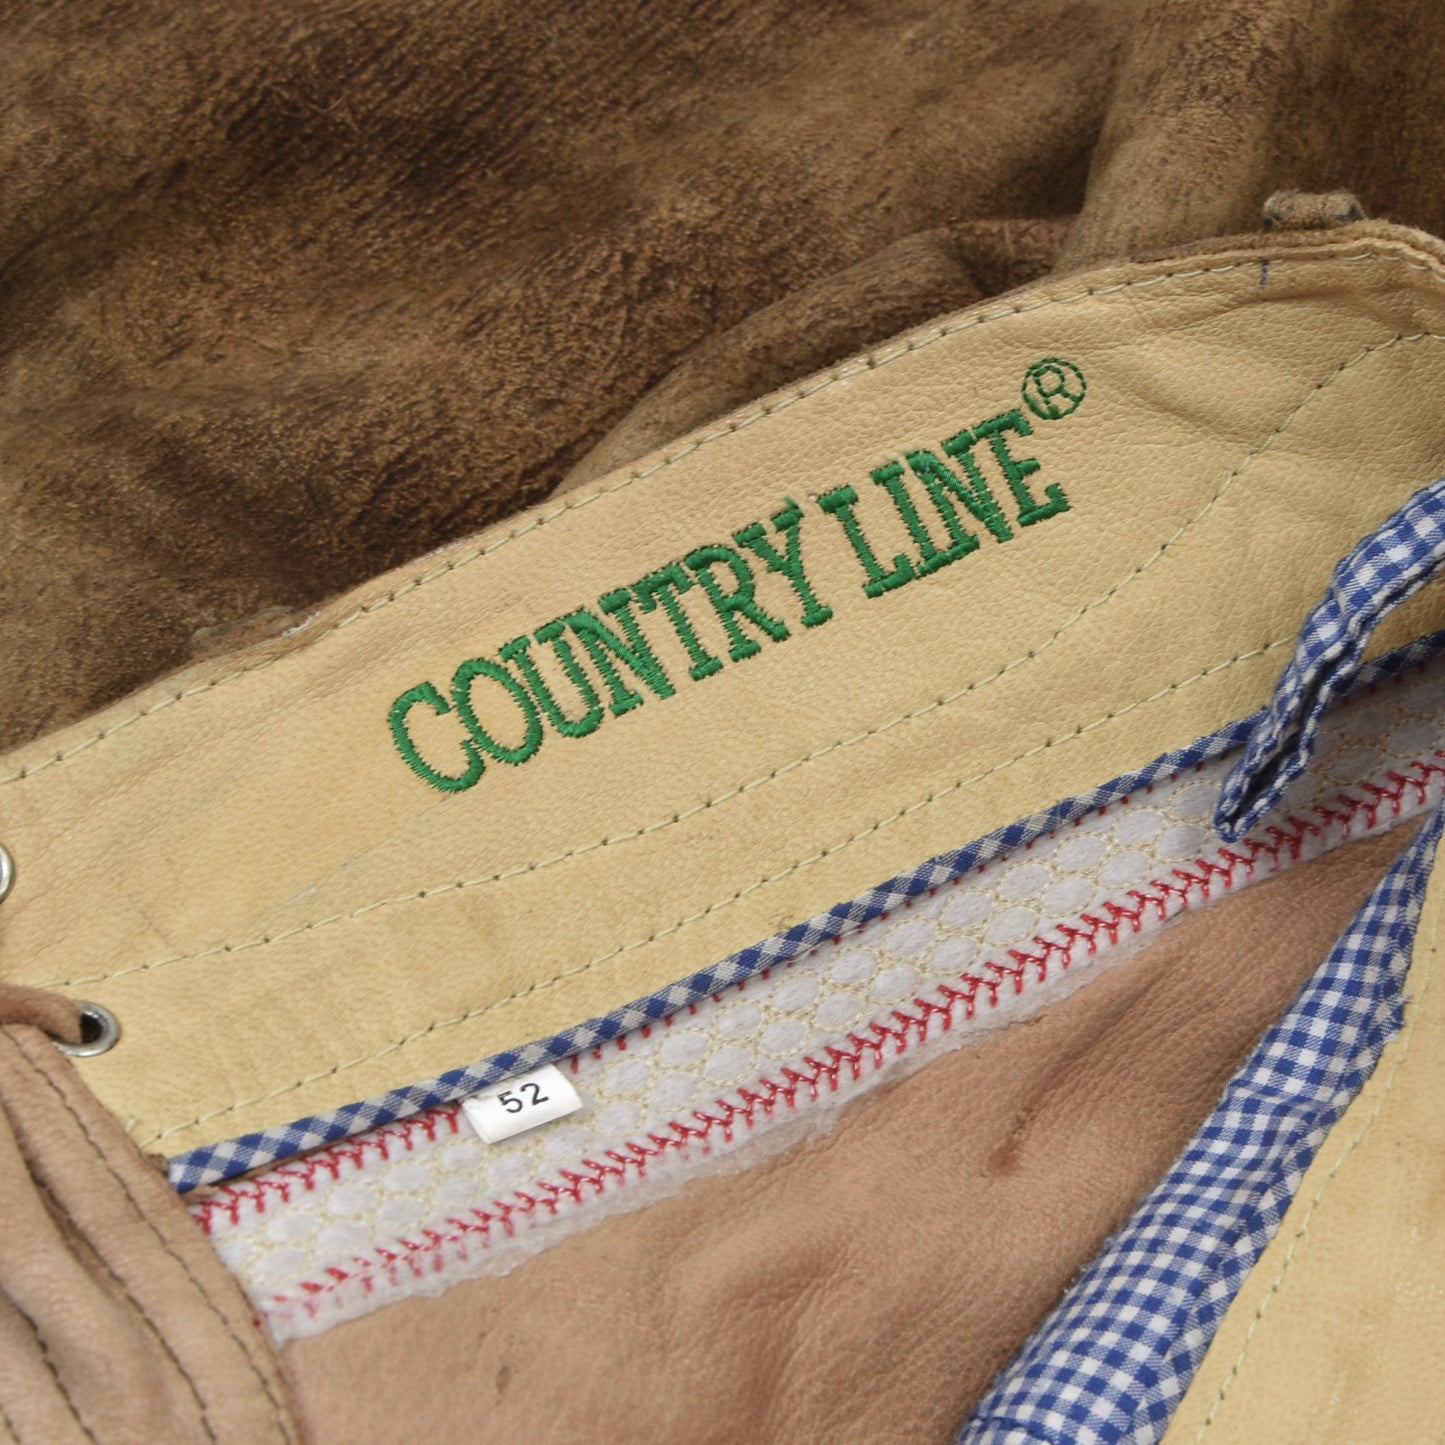 Country Line Goat Suede Lederhose Size 52 - Austrian Edition